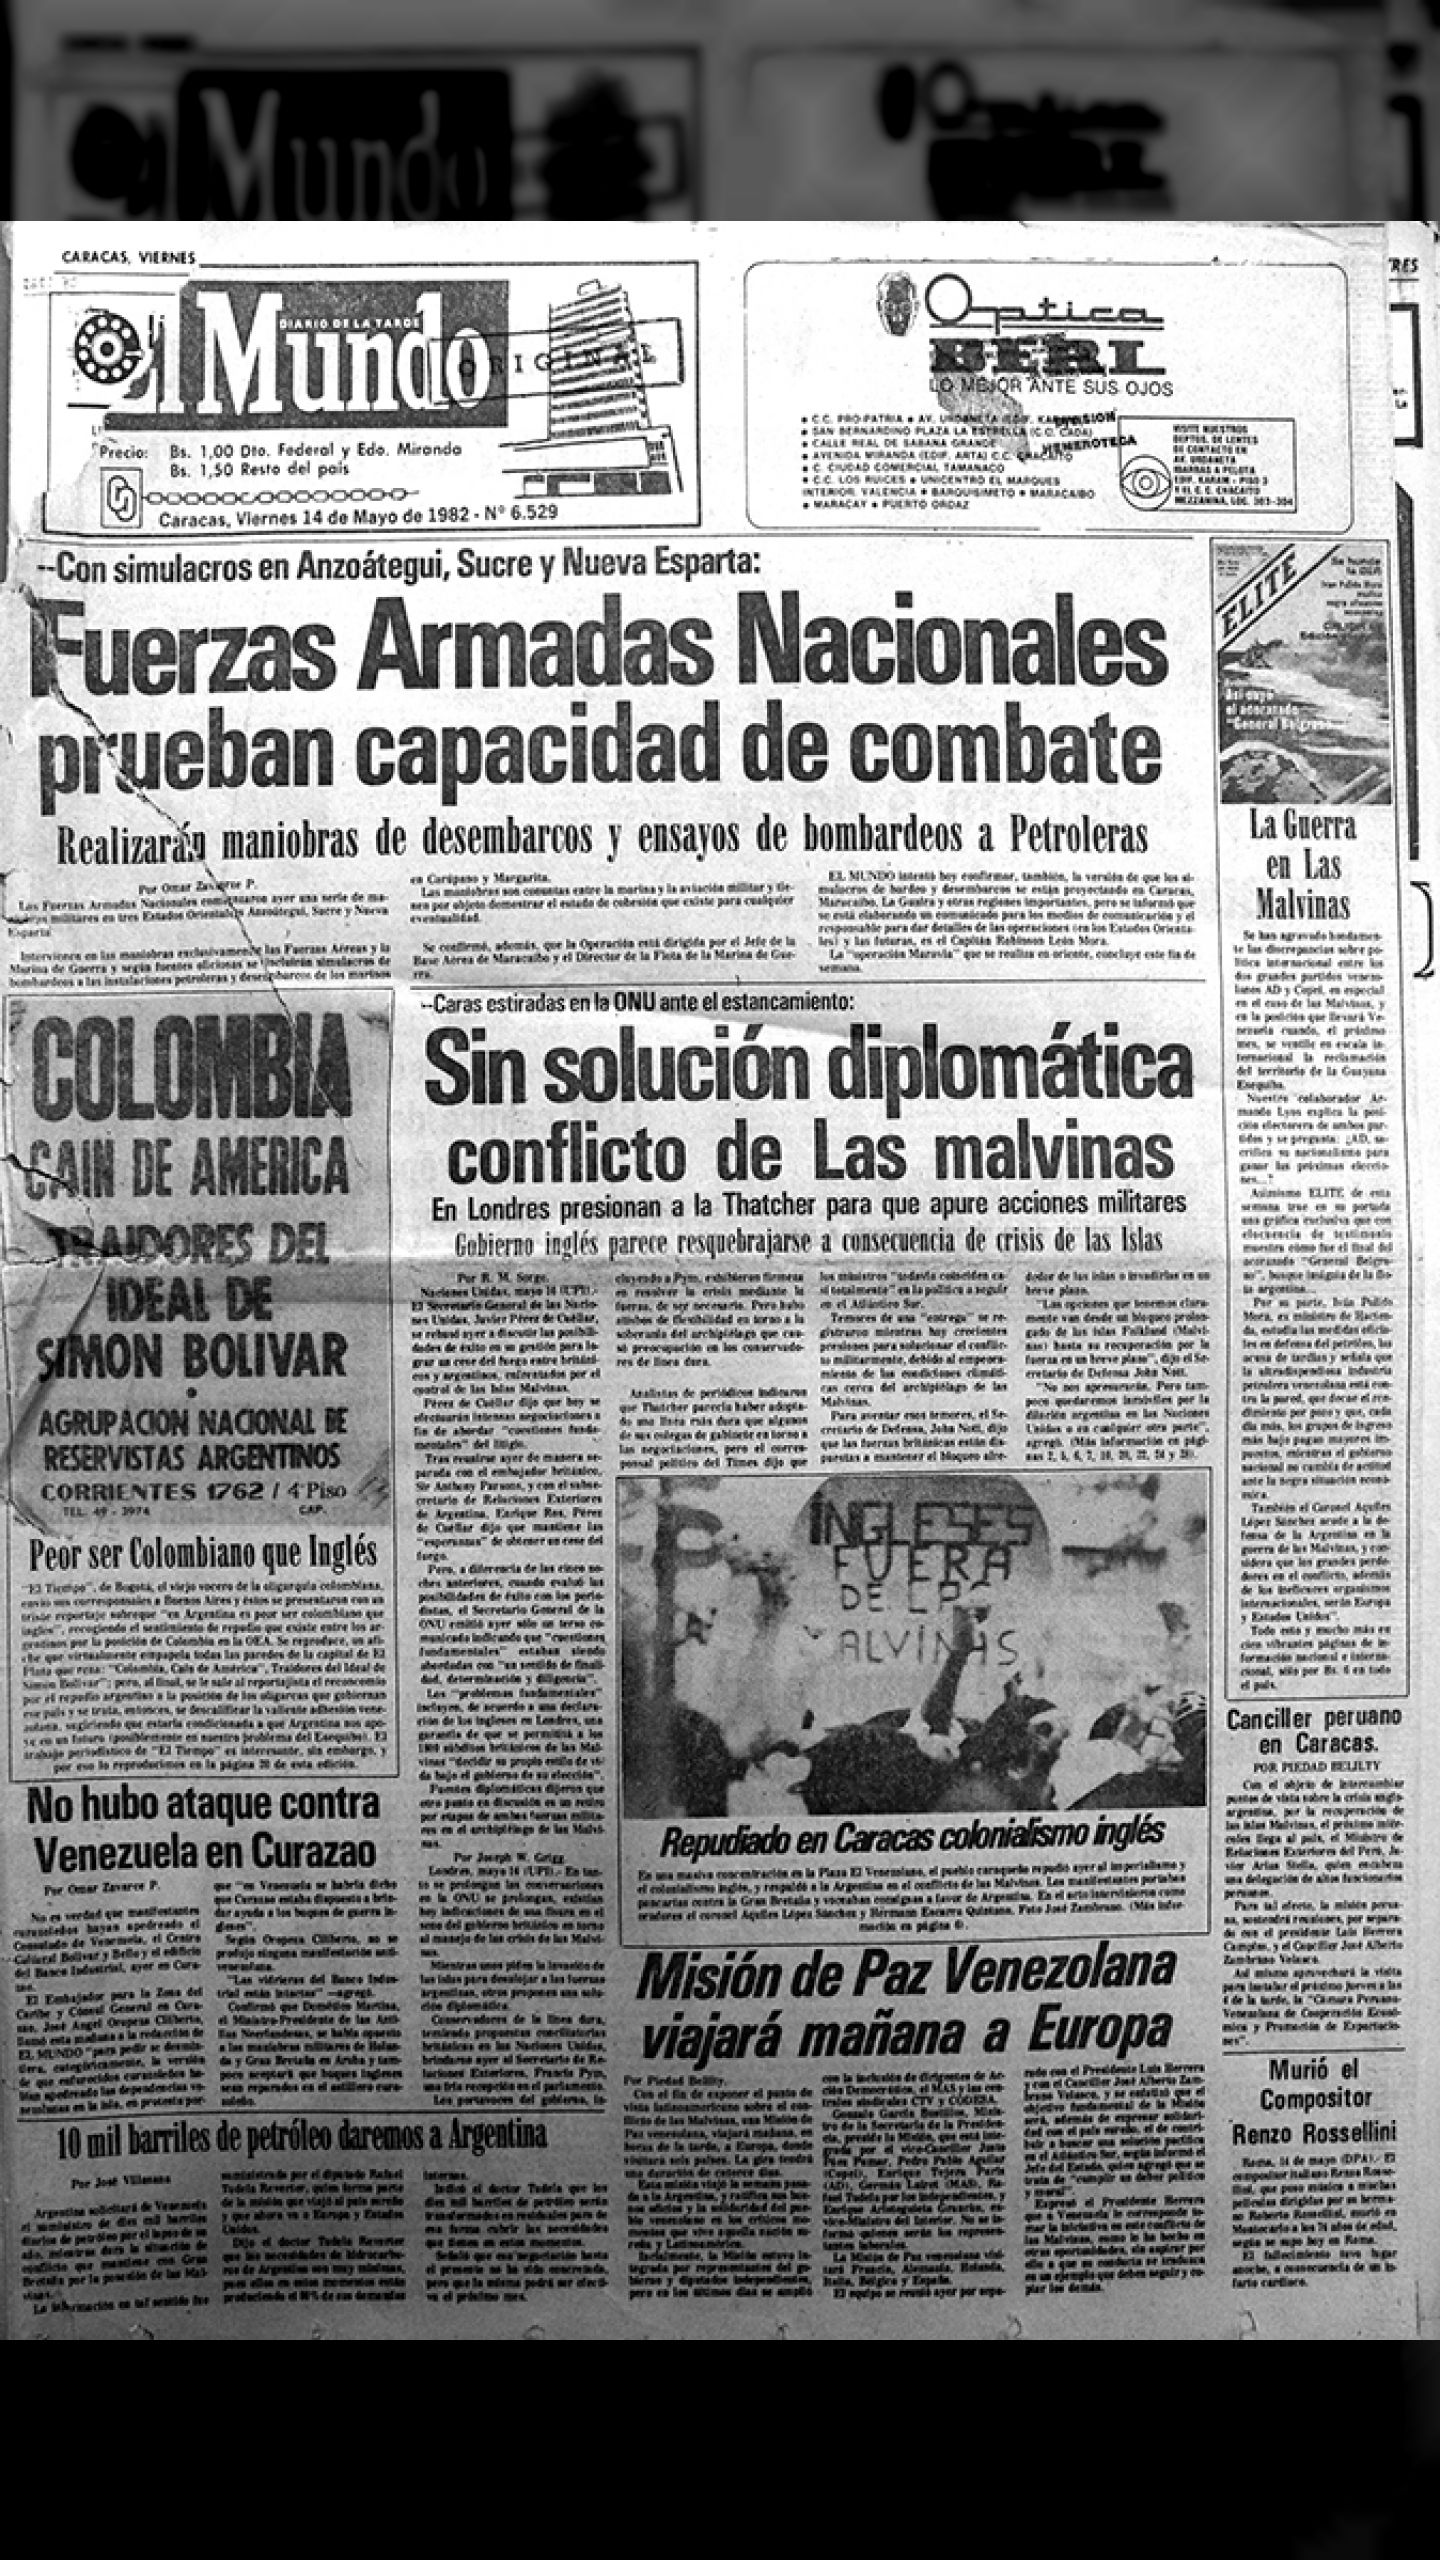 El gobierno de Colombia apoya a Inglaterra en la Guerra de las Islas Malvinas (El Mundo, 14 de mayo de 1982)